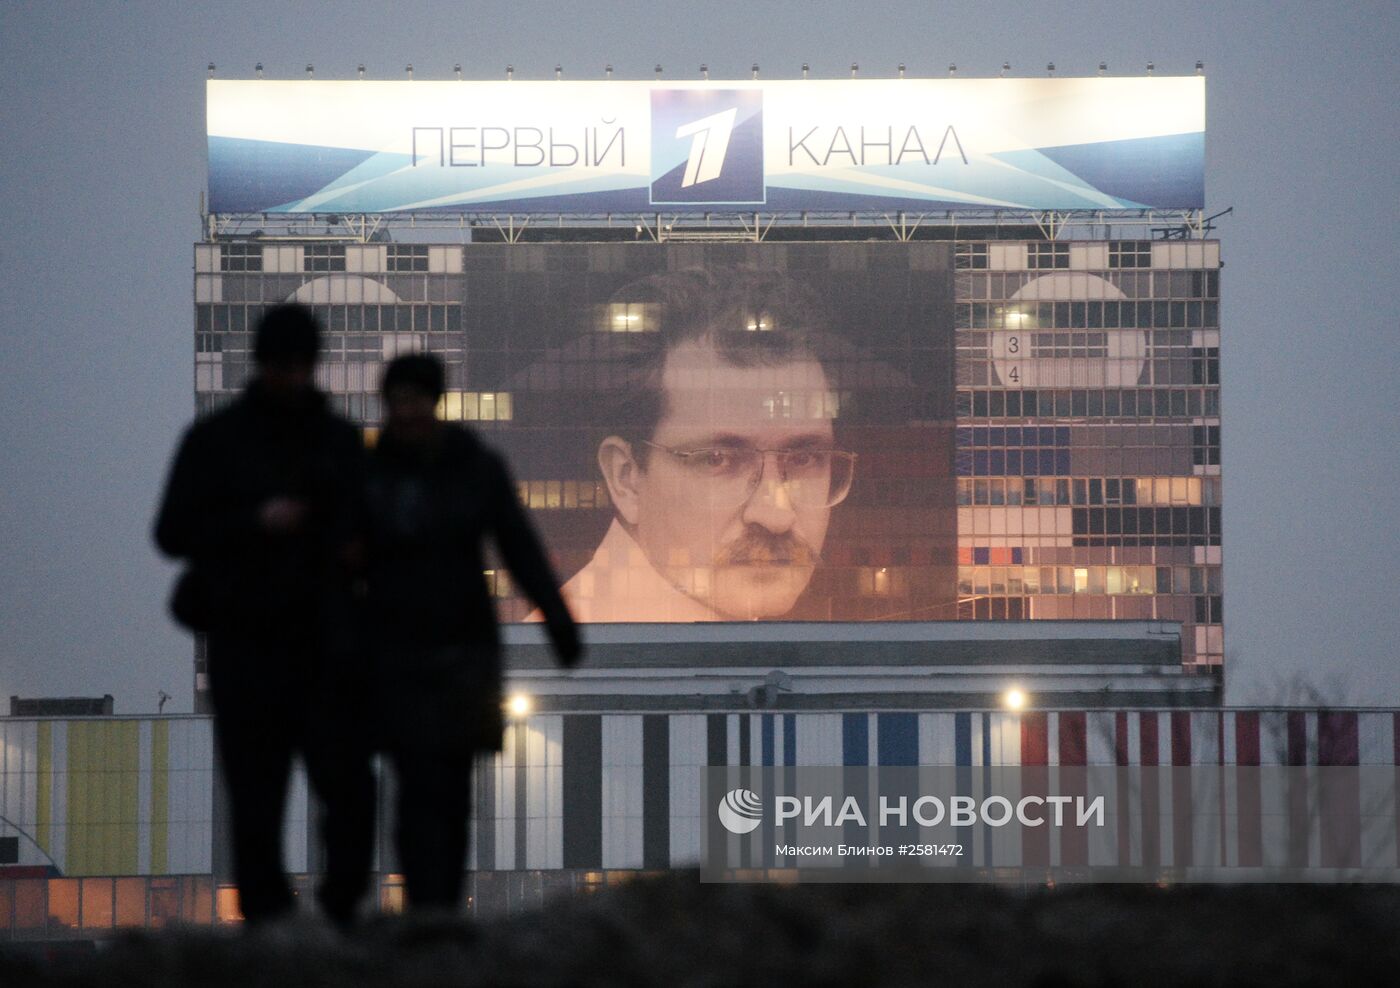 Портрет В. Листьева вывесили на здании телецентра "Останкино"